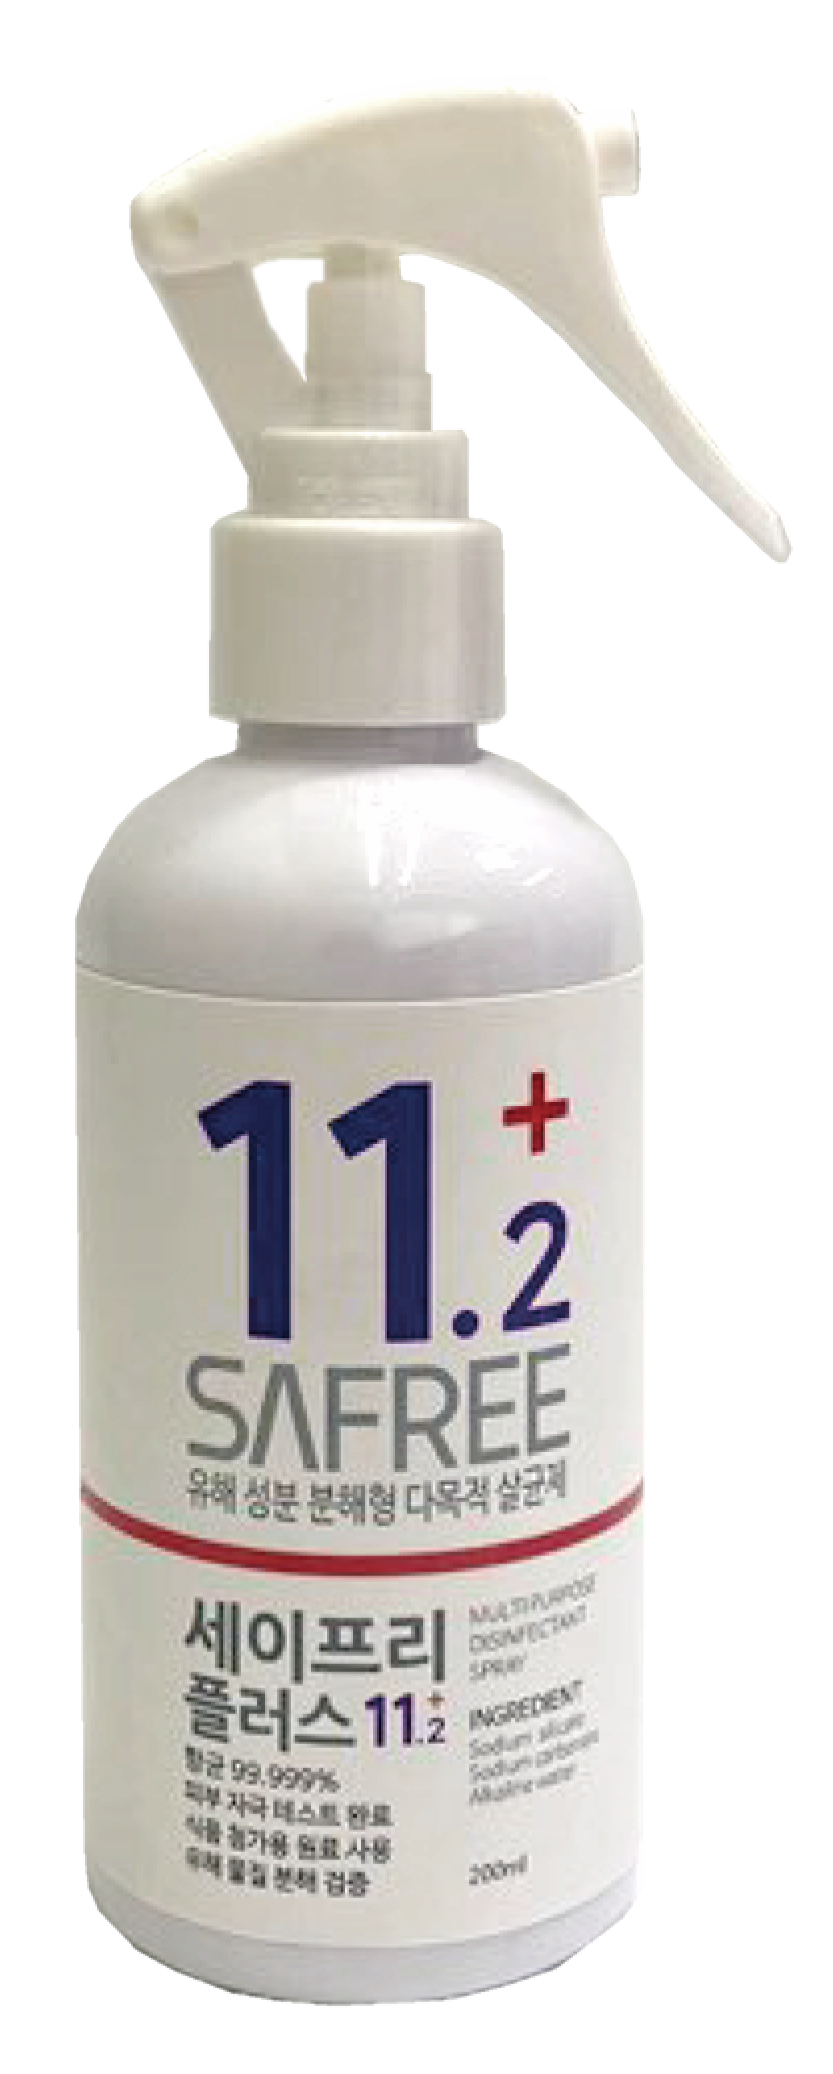 Safree plus 11_2 multi_purpose disinfectant_ quarantine and sterilization